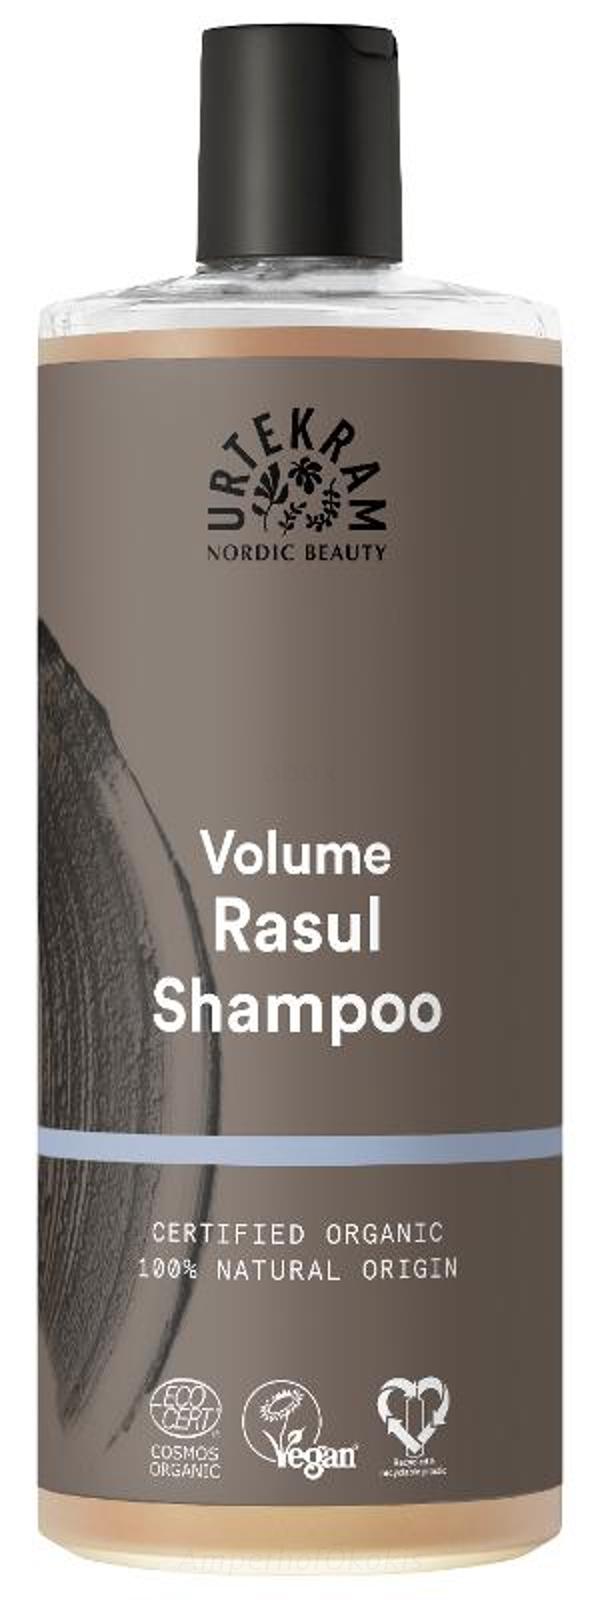 Produktfoto zu Shampoo Rasul 500 ml